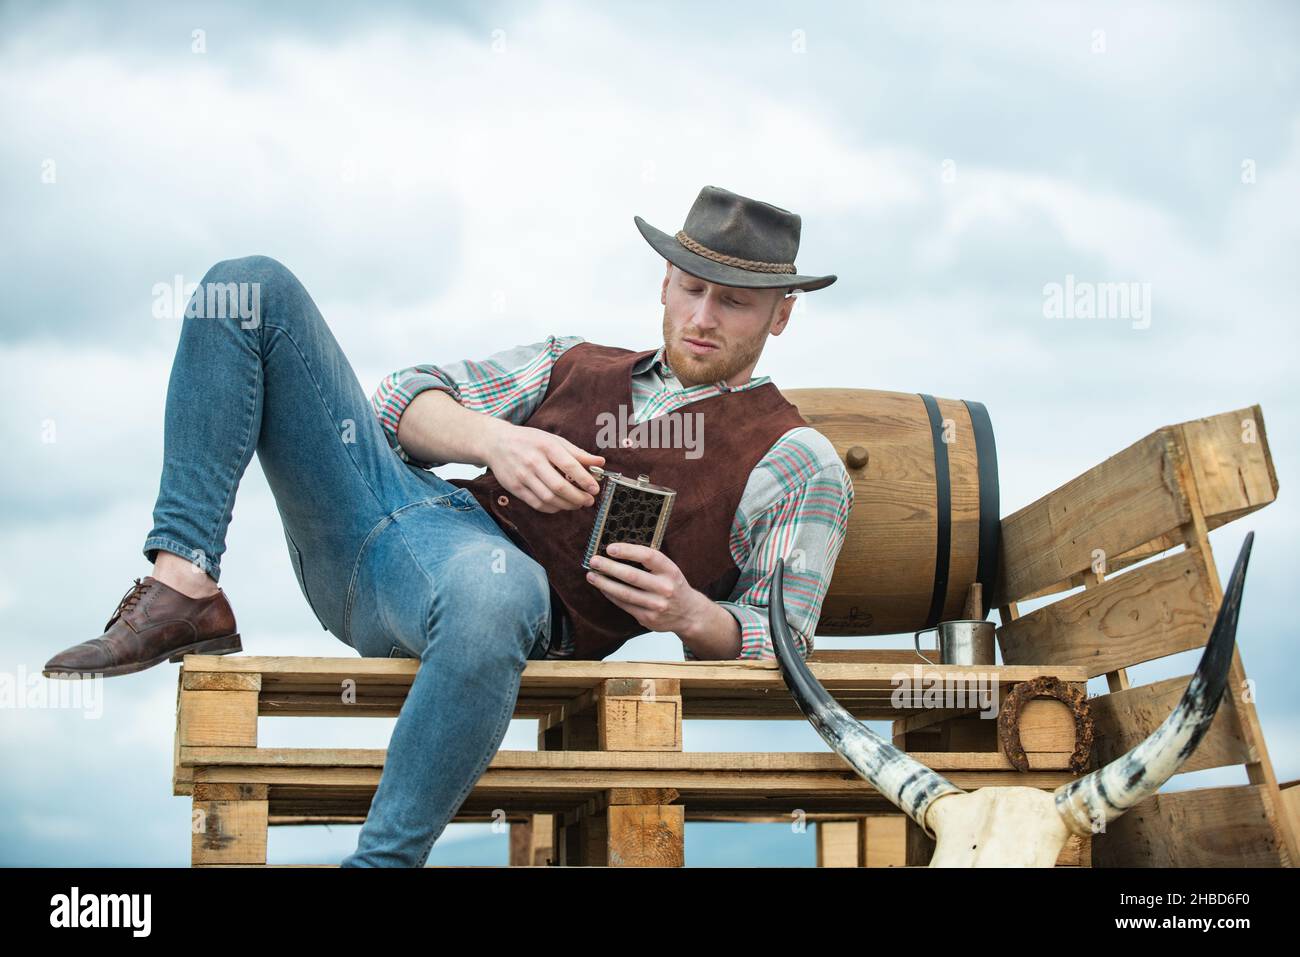 https://c8.alamy.com/compes/2hbd6f0/hombre-campesino-vaquero-en-el-lado-del-pais-con-sombrero-vaquero-occidental-modelo-masculino-americano-en-el-campo-hombre-atractivo-con-whisky-o-brandy-2hbd6f0.jpg